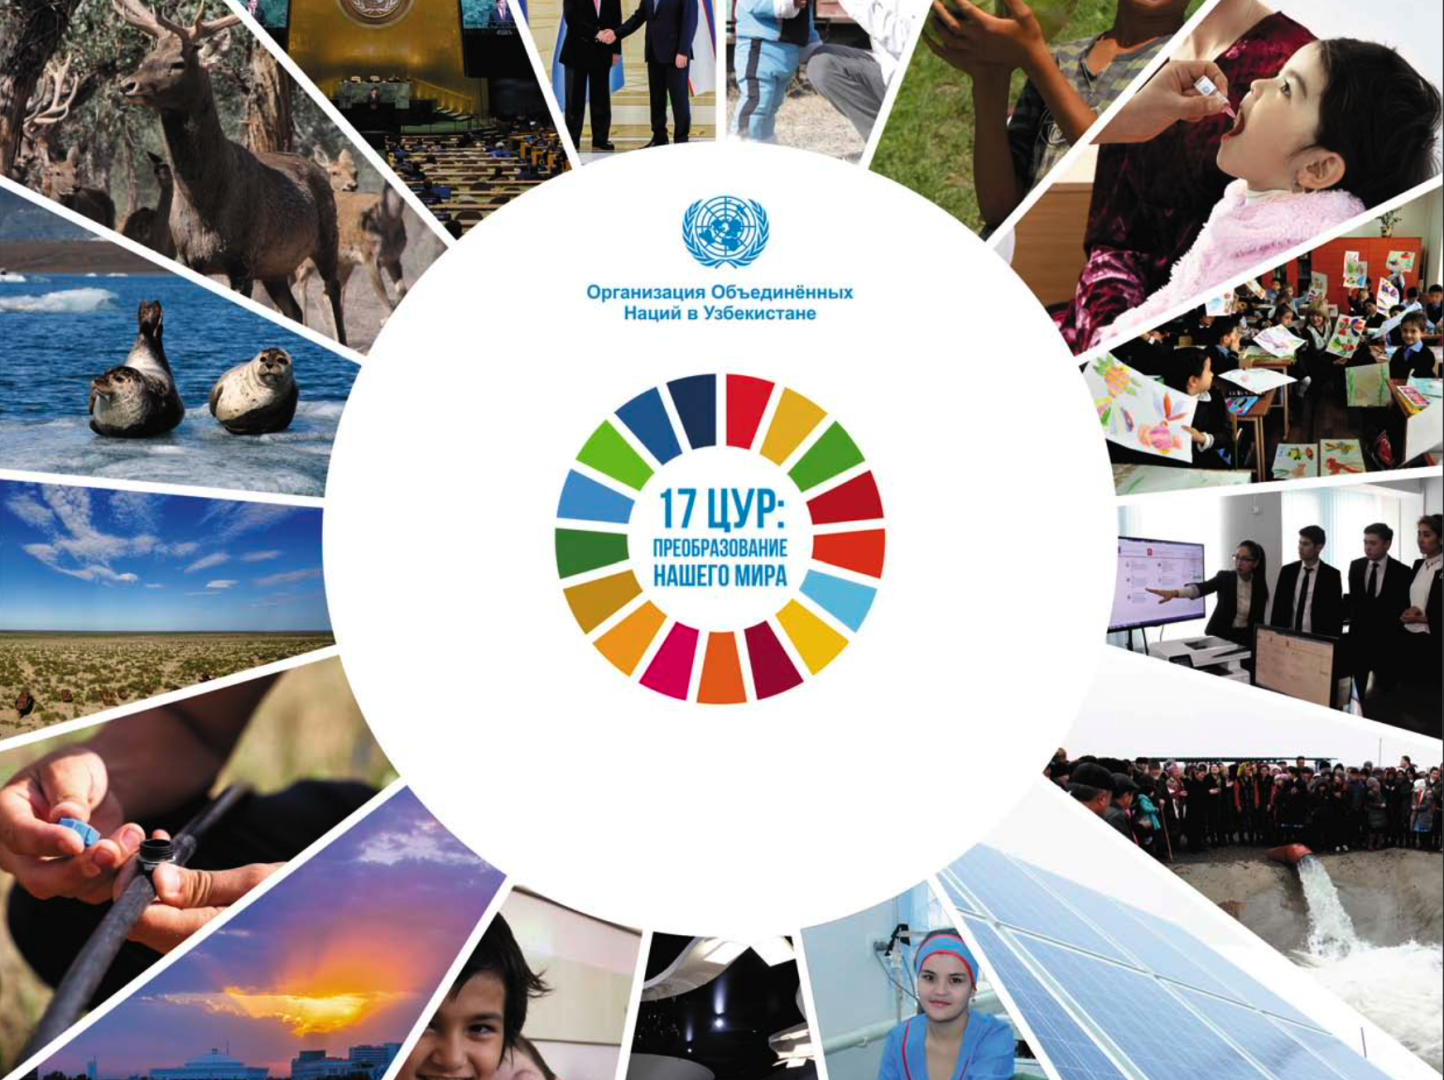 17 устойчивых целей оон. 17 Целей устойчивого развития ООН. Цели устойчивого развития. Цели устойчивого развития ООН 2015-2030. Цели устойчивого развития ООН.